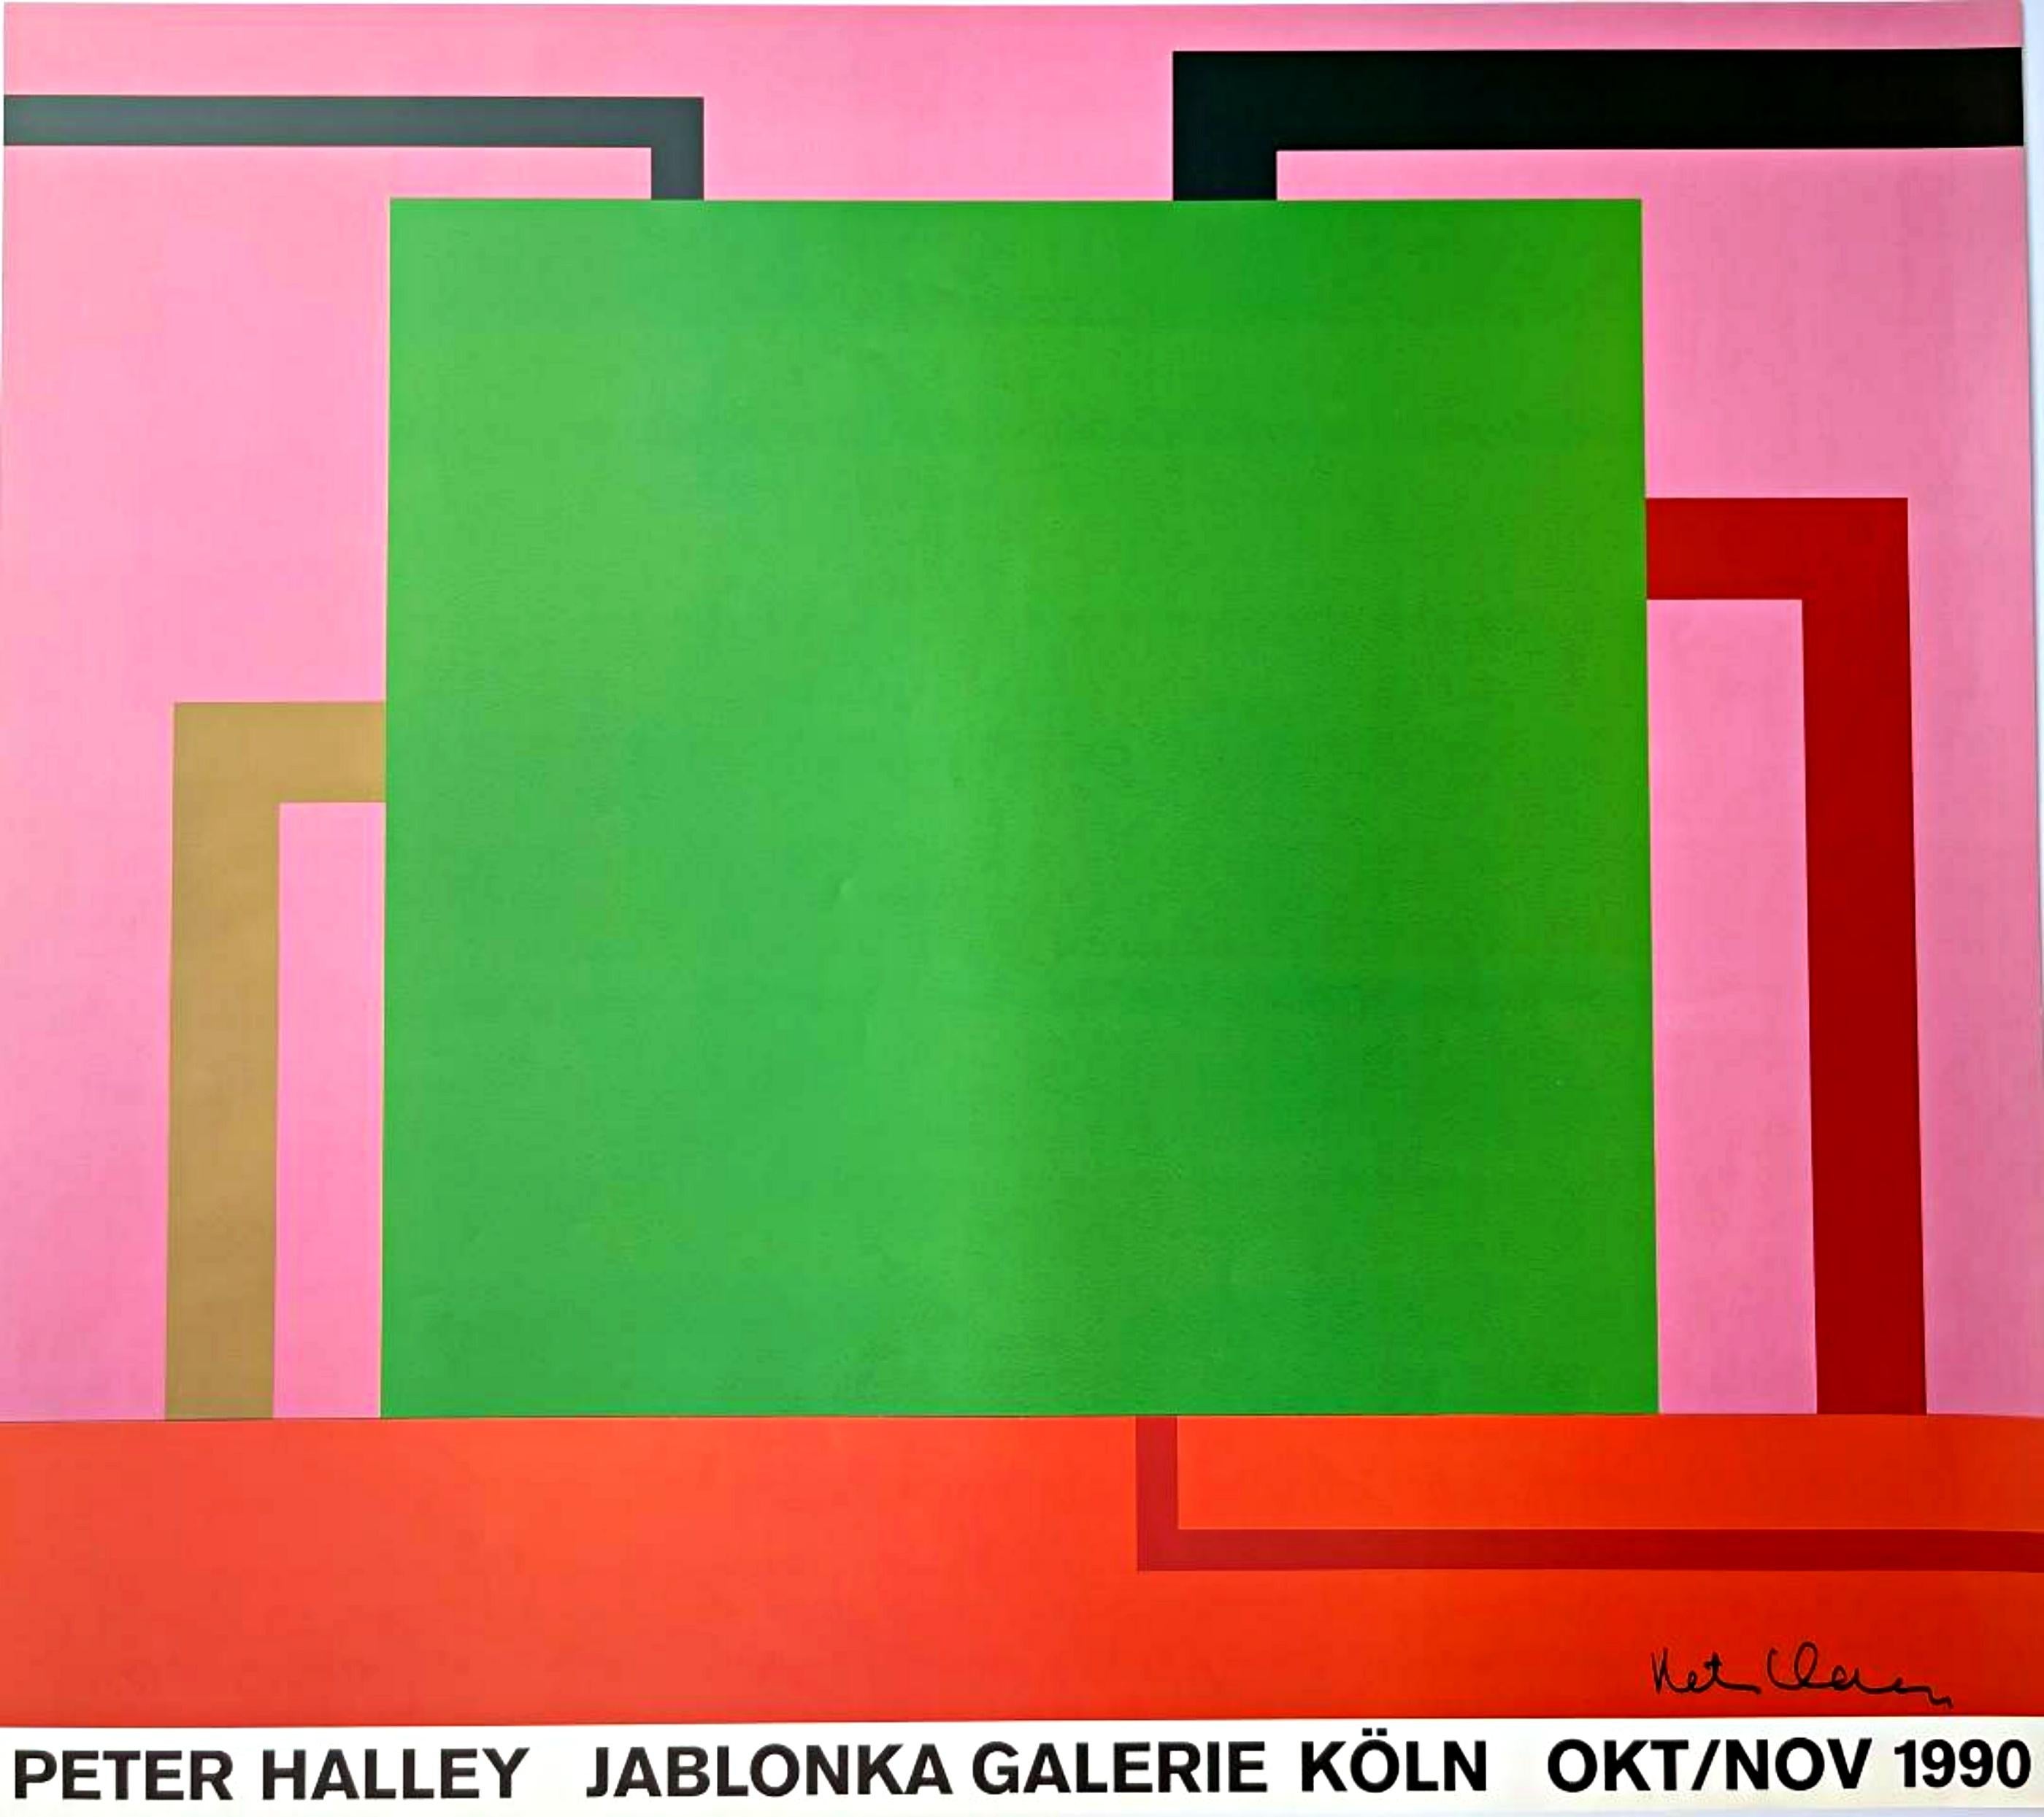 Peter Halley, Jablonka Galerie, Köln seltenes Ausstellungsplakat (handsigniert)